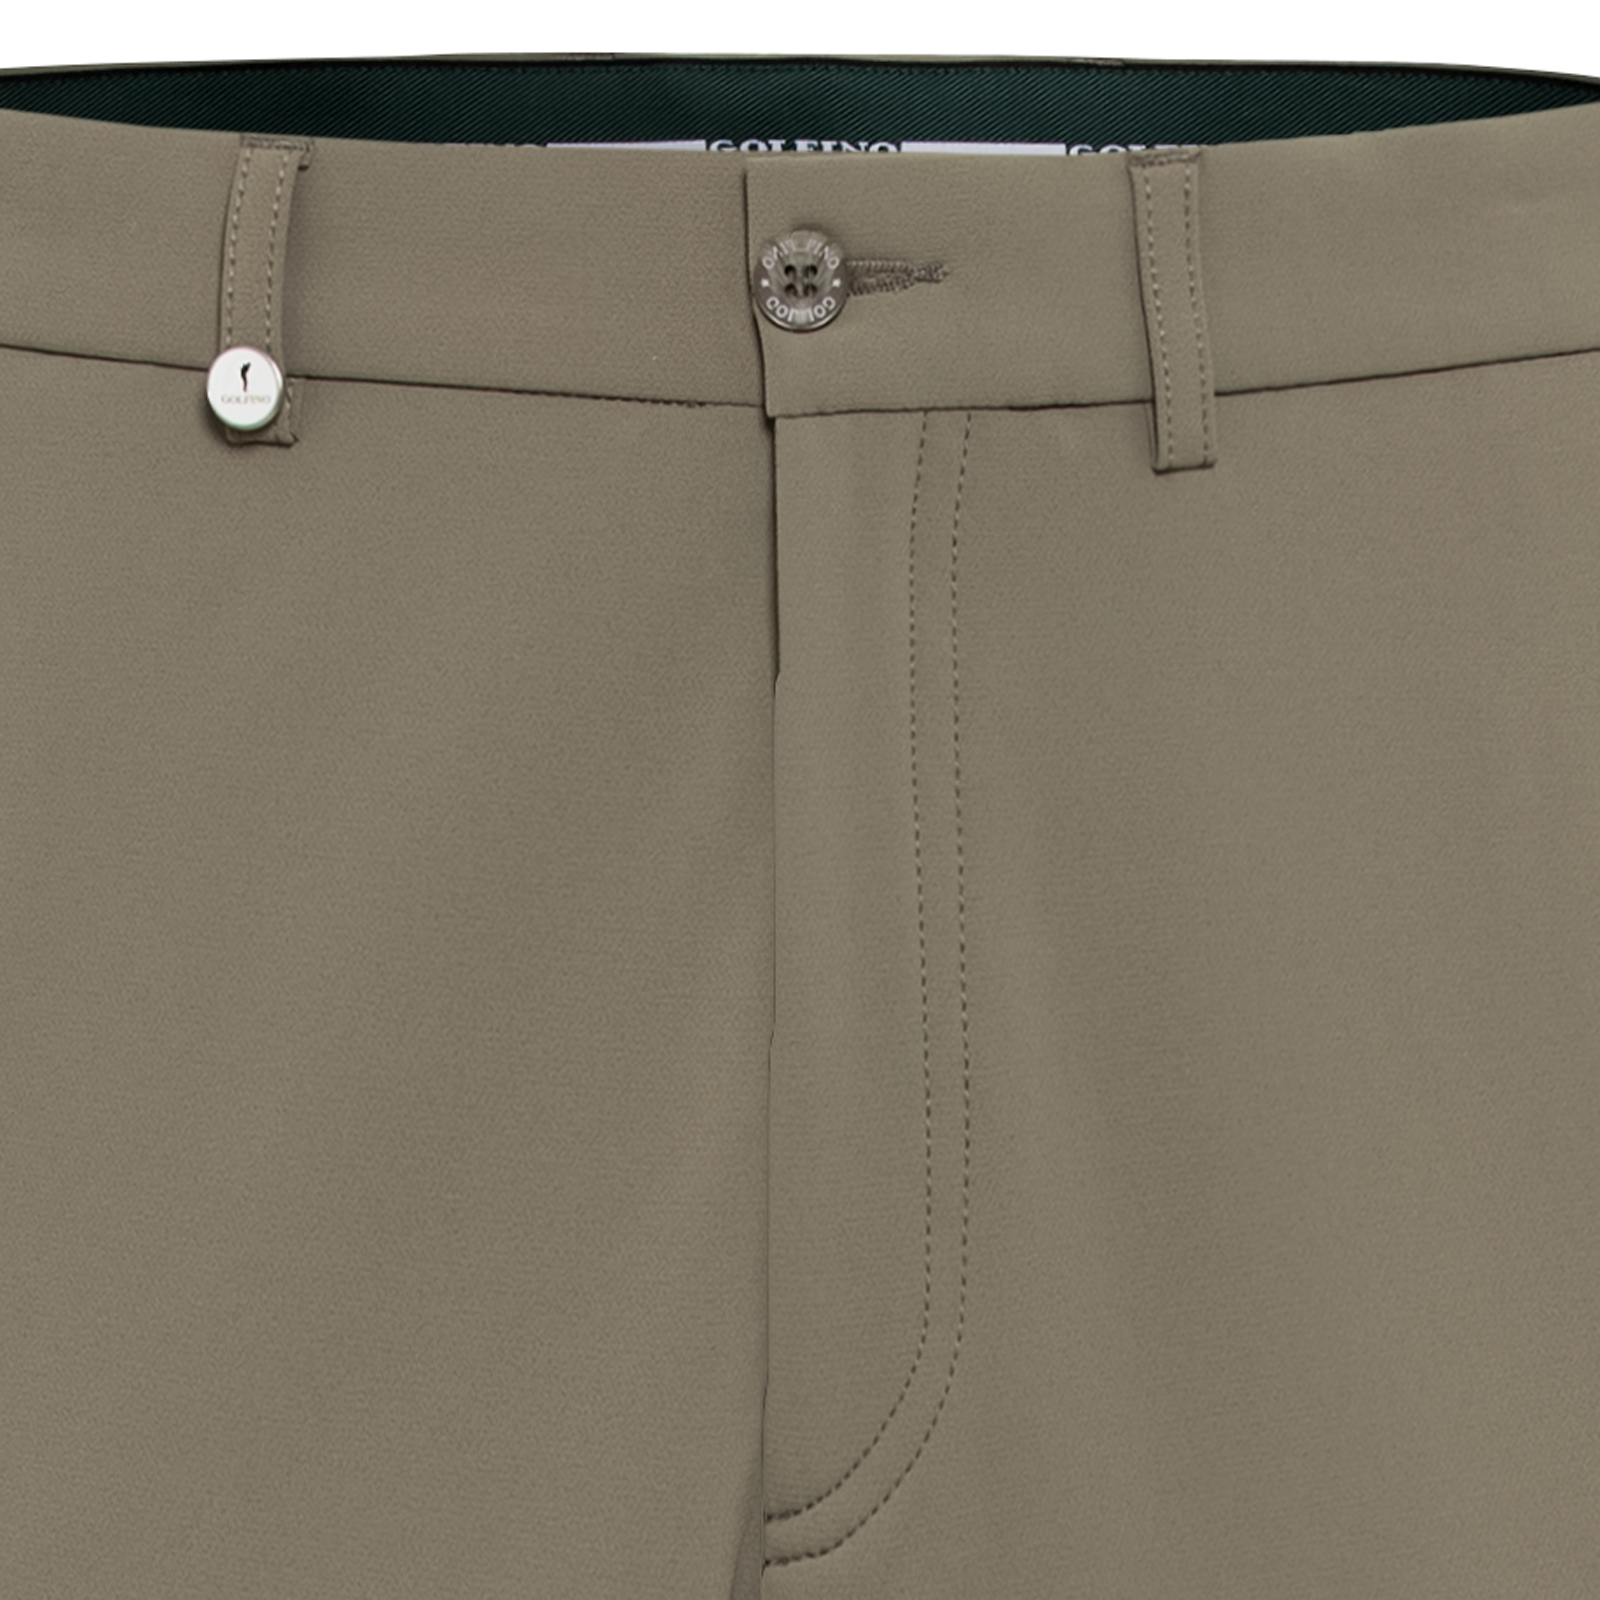 Pantalón de golf de hombre térmico y deportivo con función elástica de 4 direcciones